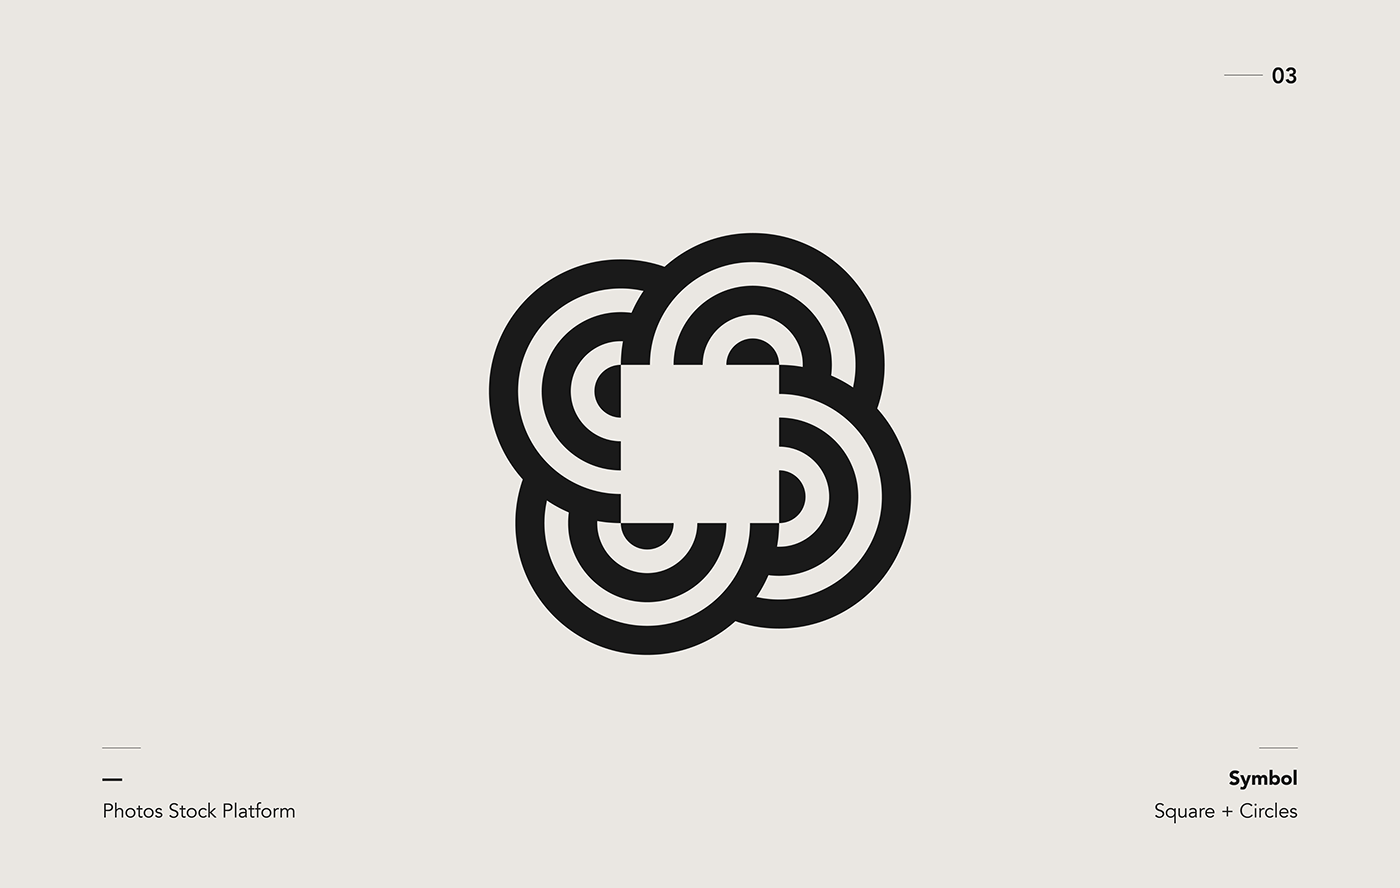 Circles and square logo symbol